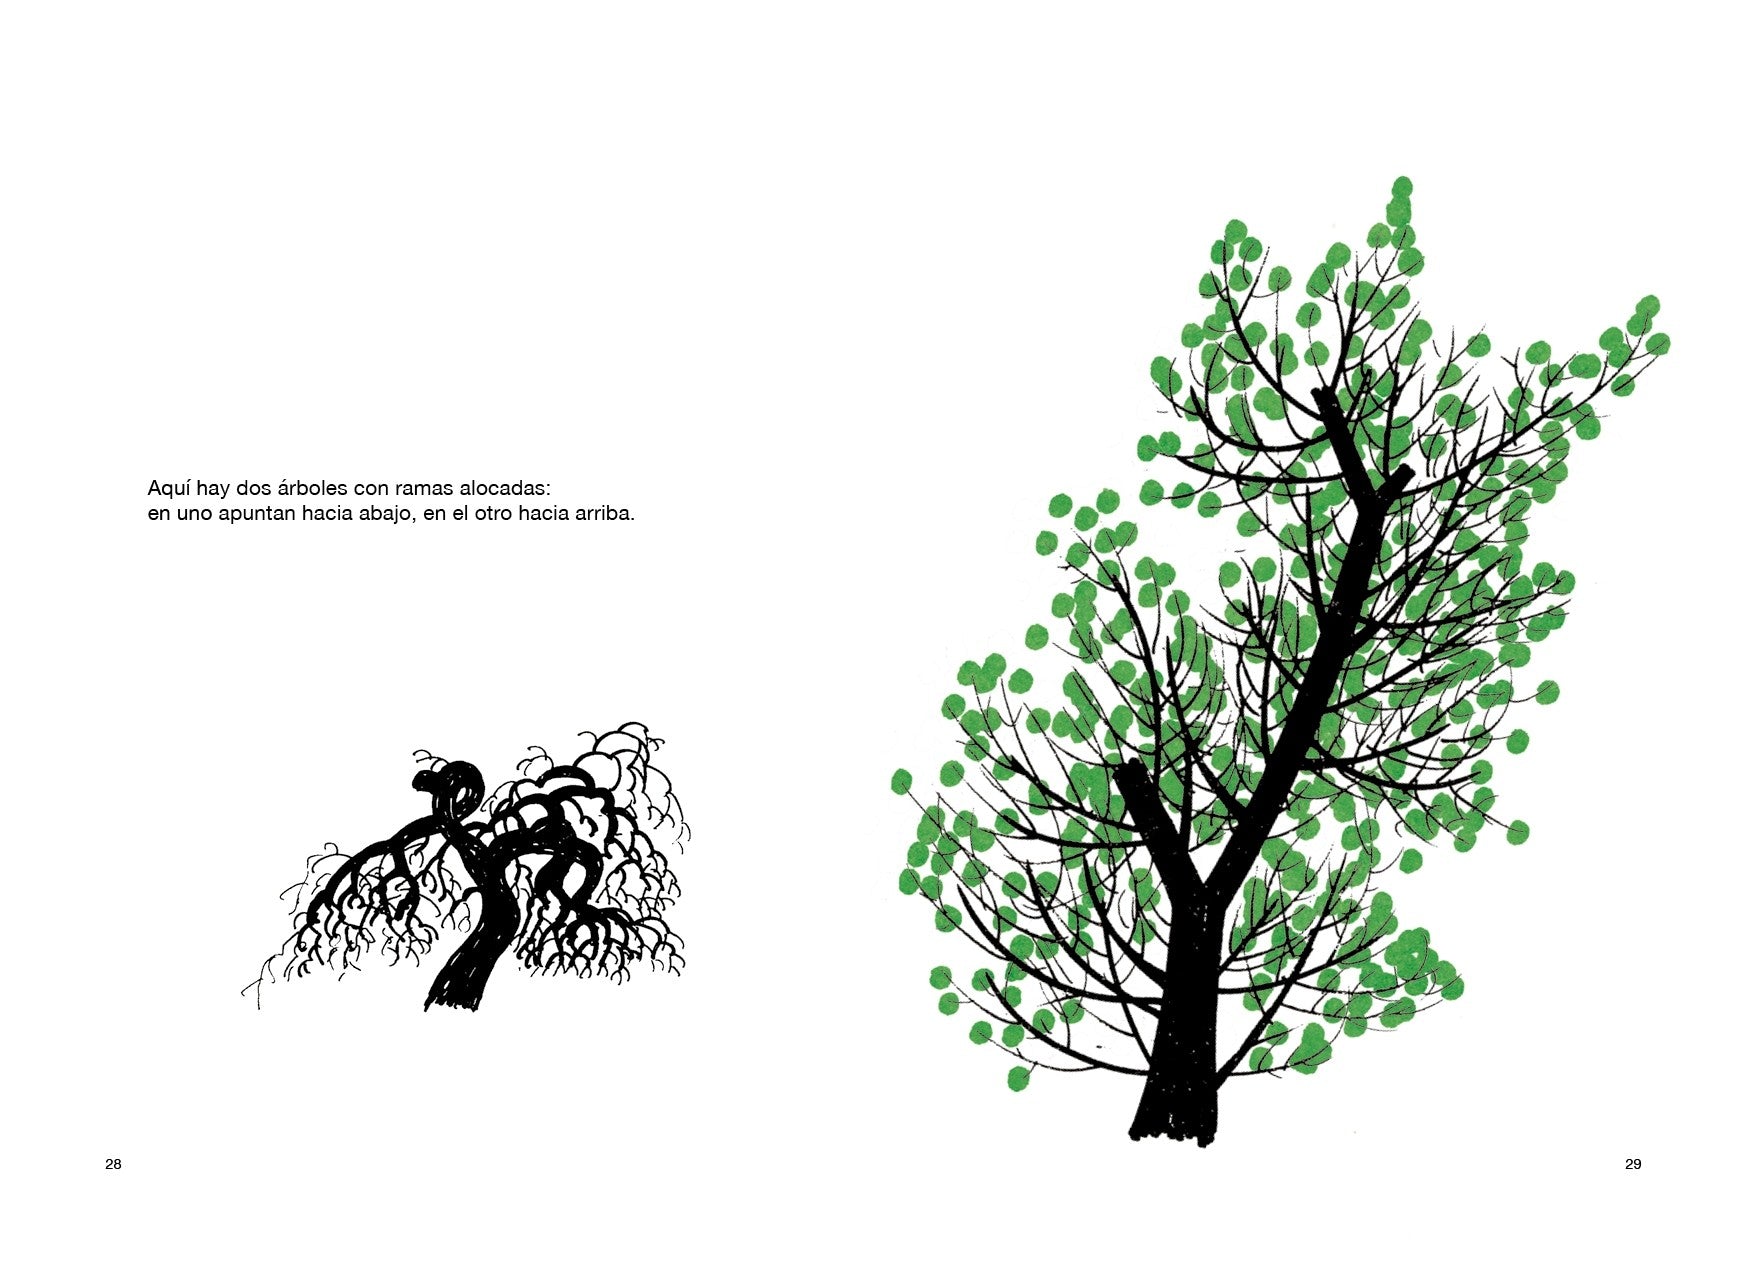 Dibujar un árbol - Bruno Munari